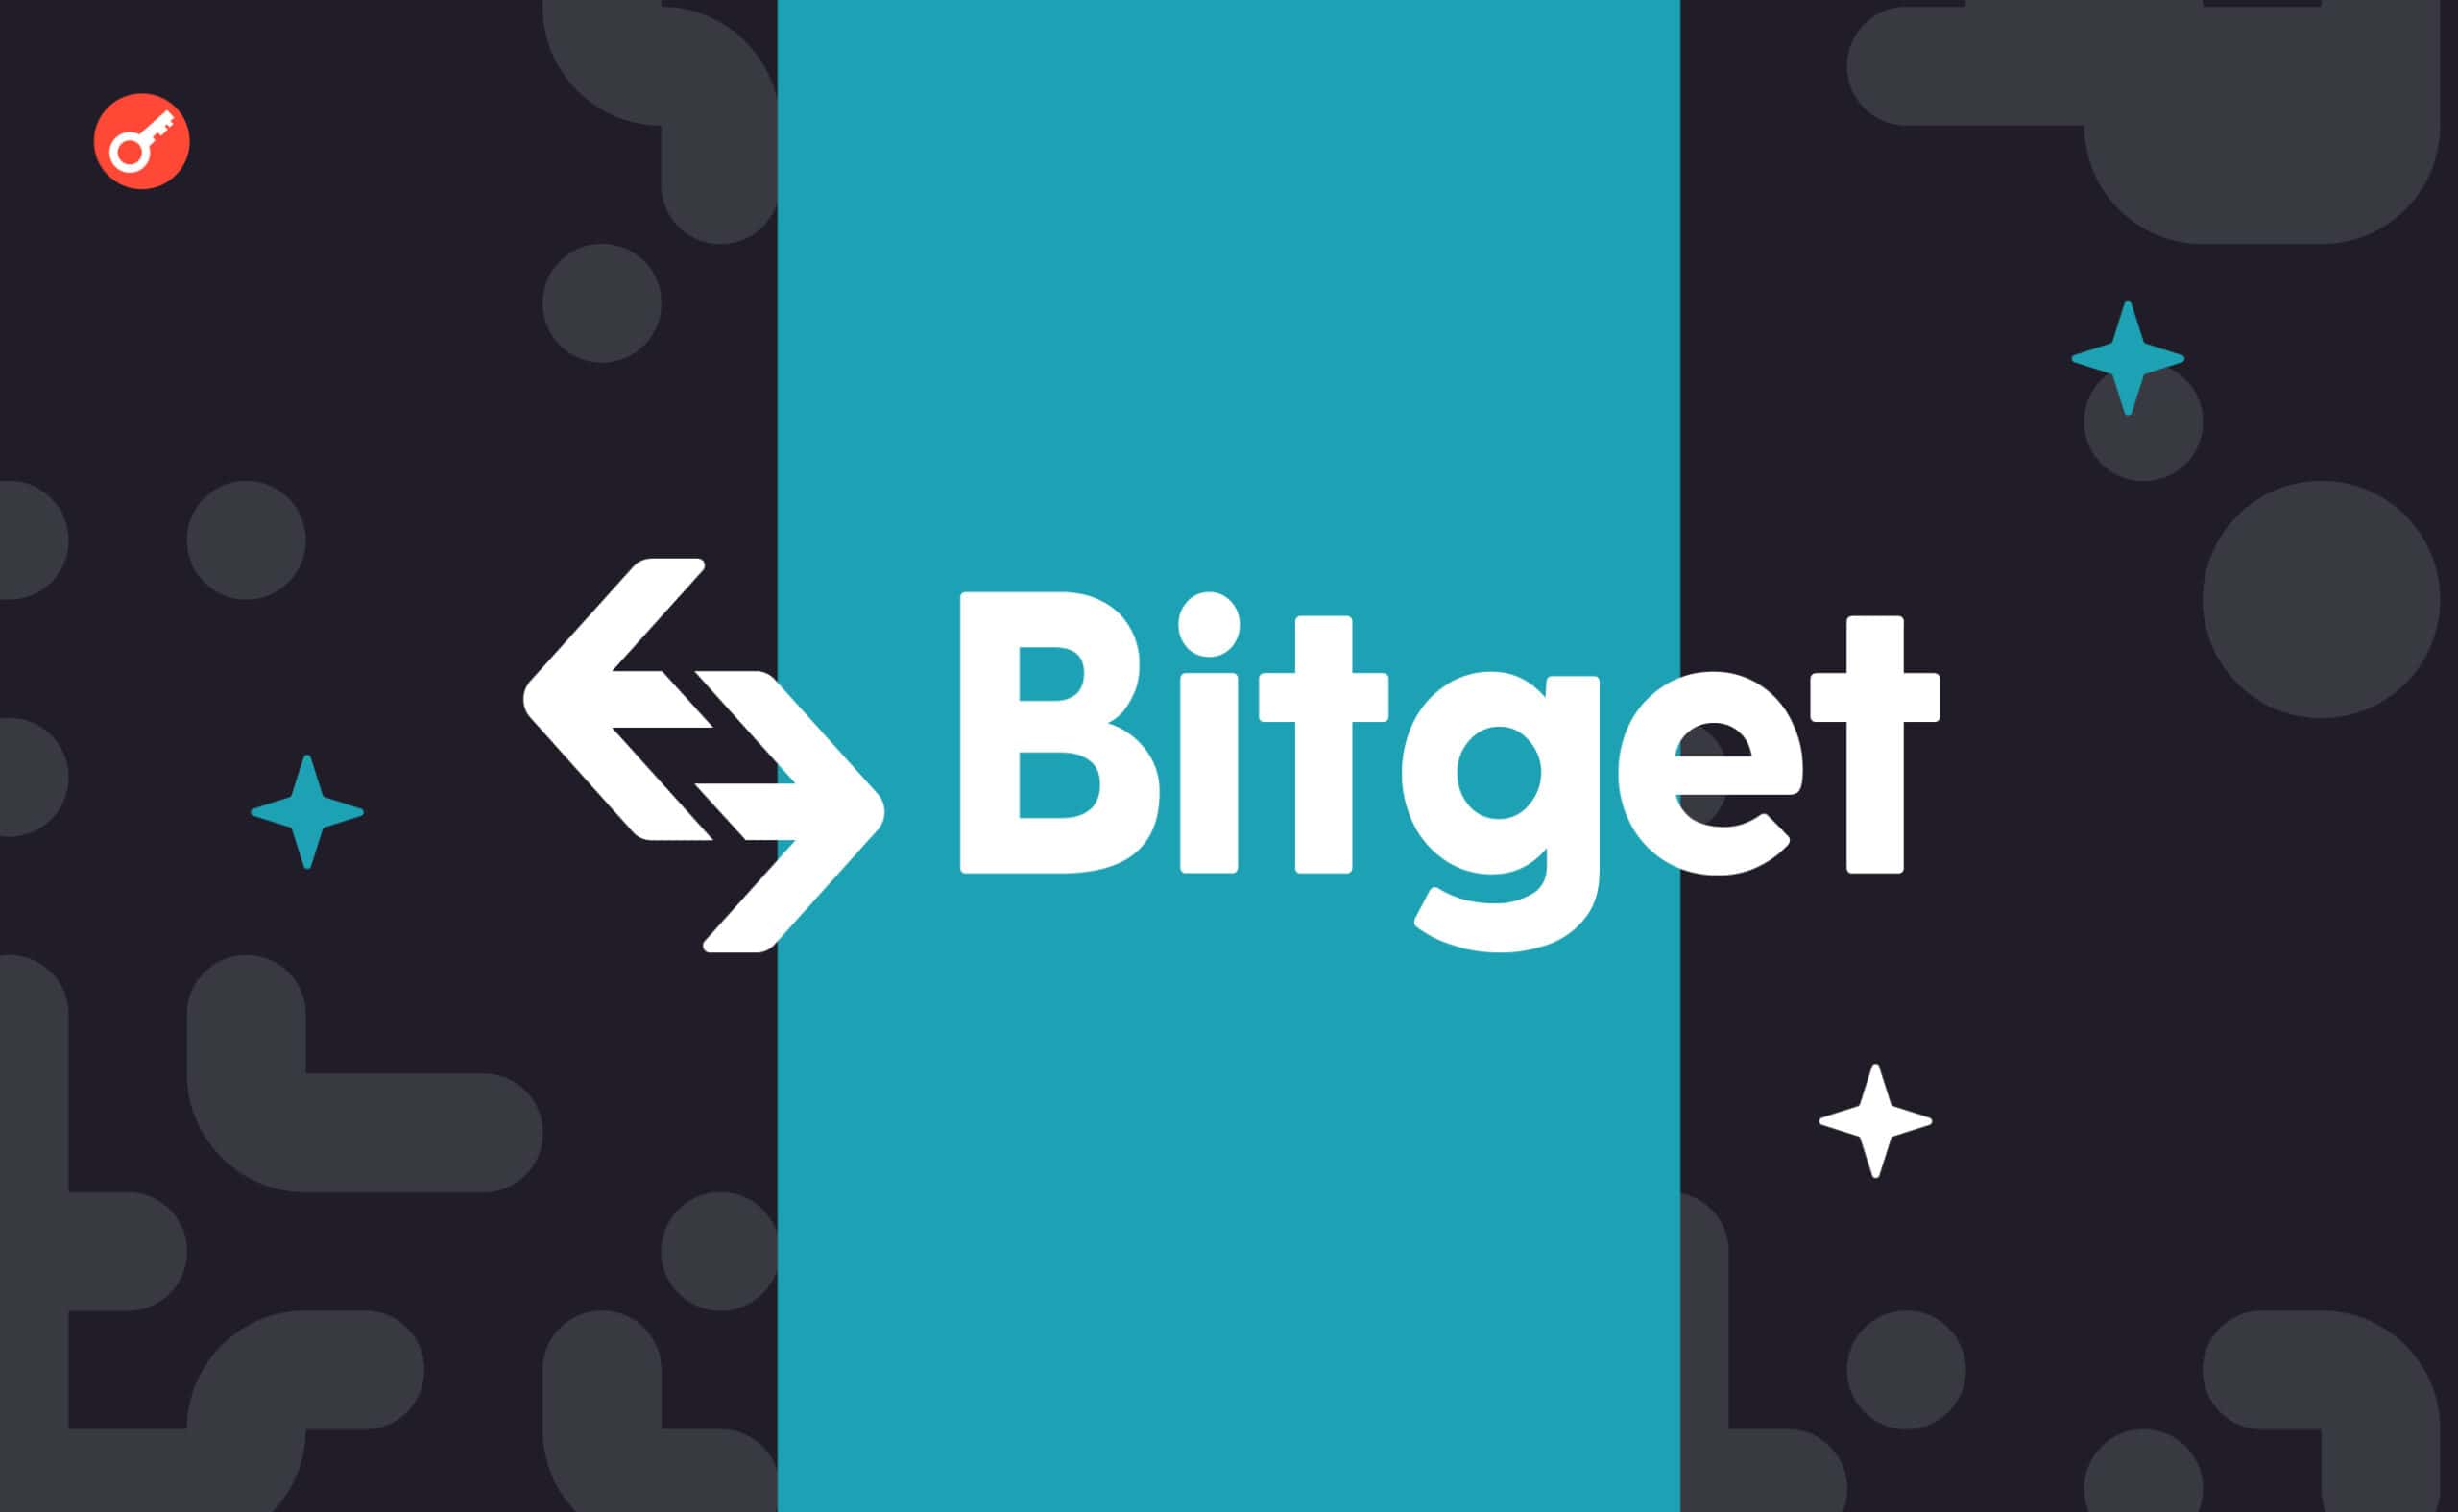 Bitget додала моніторинг ончейн-даних для відстеження стратегій Smart Money копітрейдерами. Головний колаж новини.